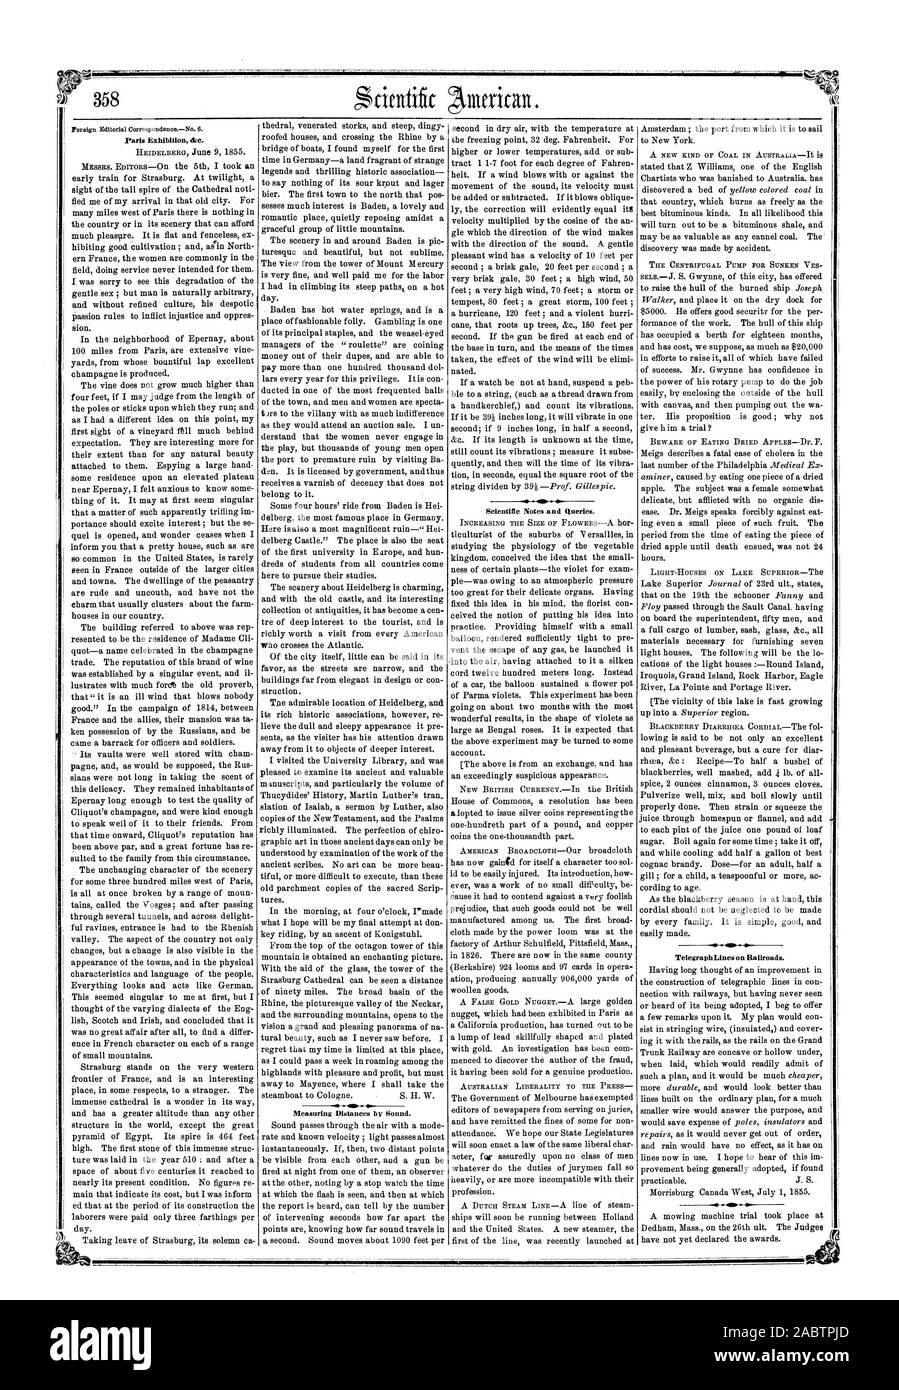 Earls mostra &c. Misurare le distanze dal suono. Appunti scientifici e le query. Le linee del telegrafo sulle ferrovie., Scientific American, 1855-07-14 Foto Stock